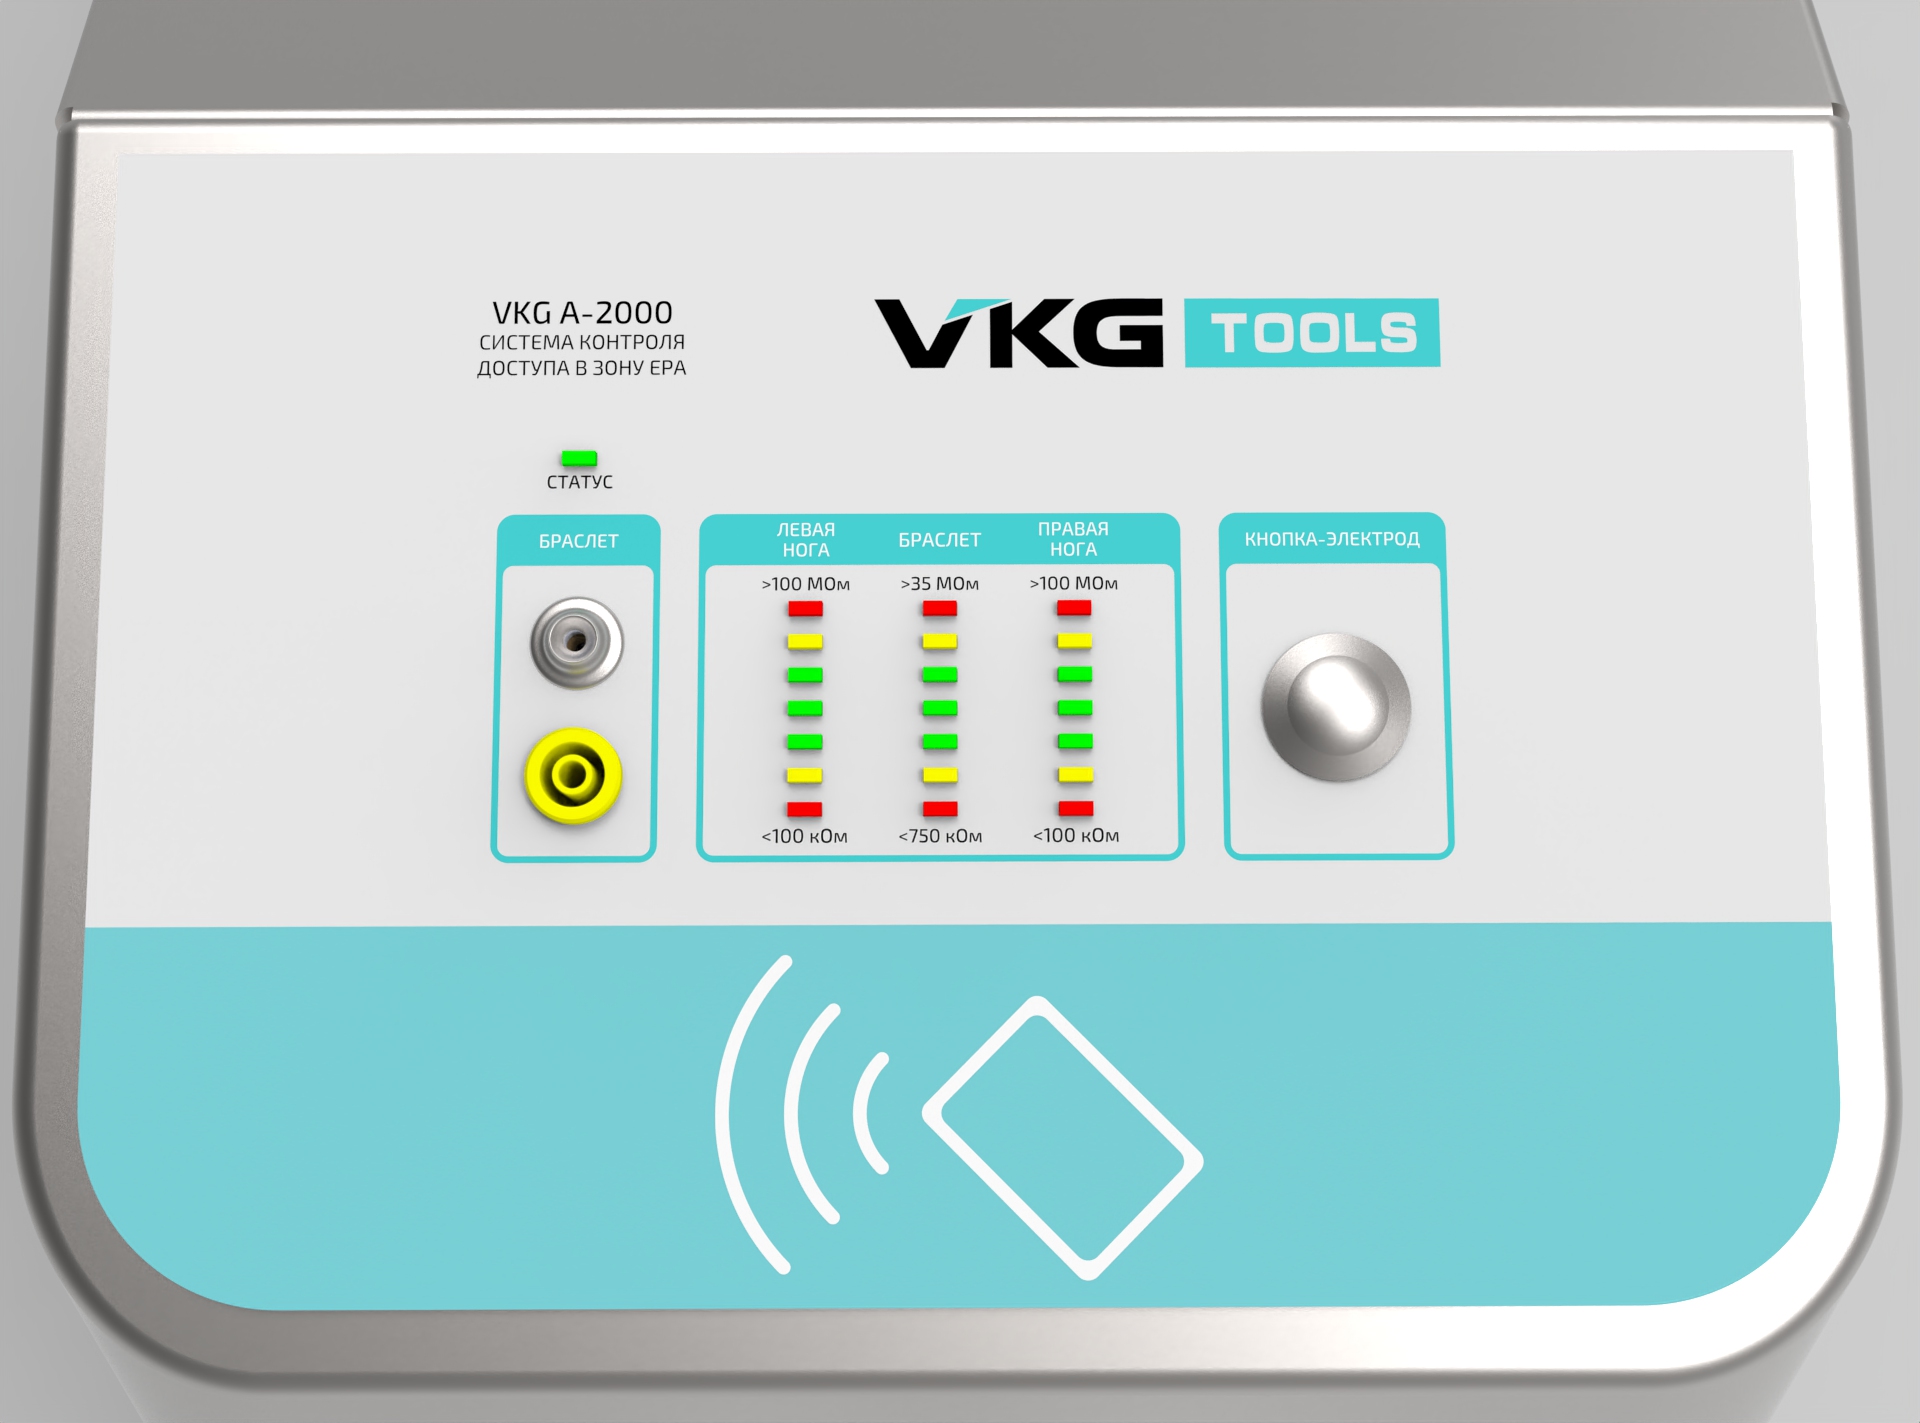 Турникет VKG А-2000 Система контроля в доступа в зону EPA